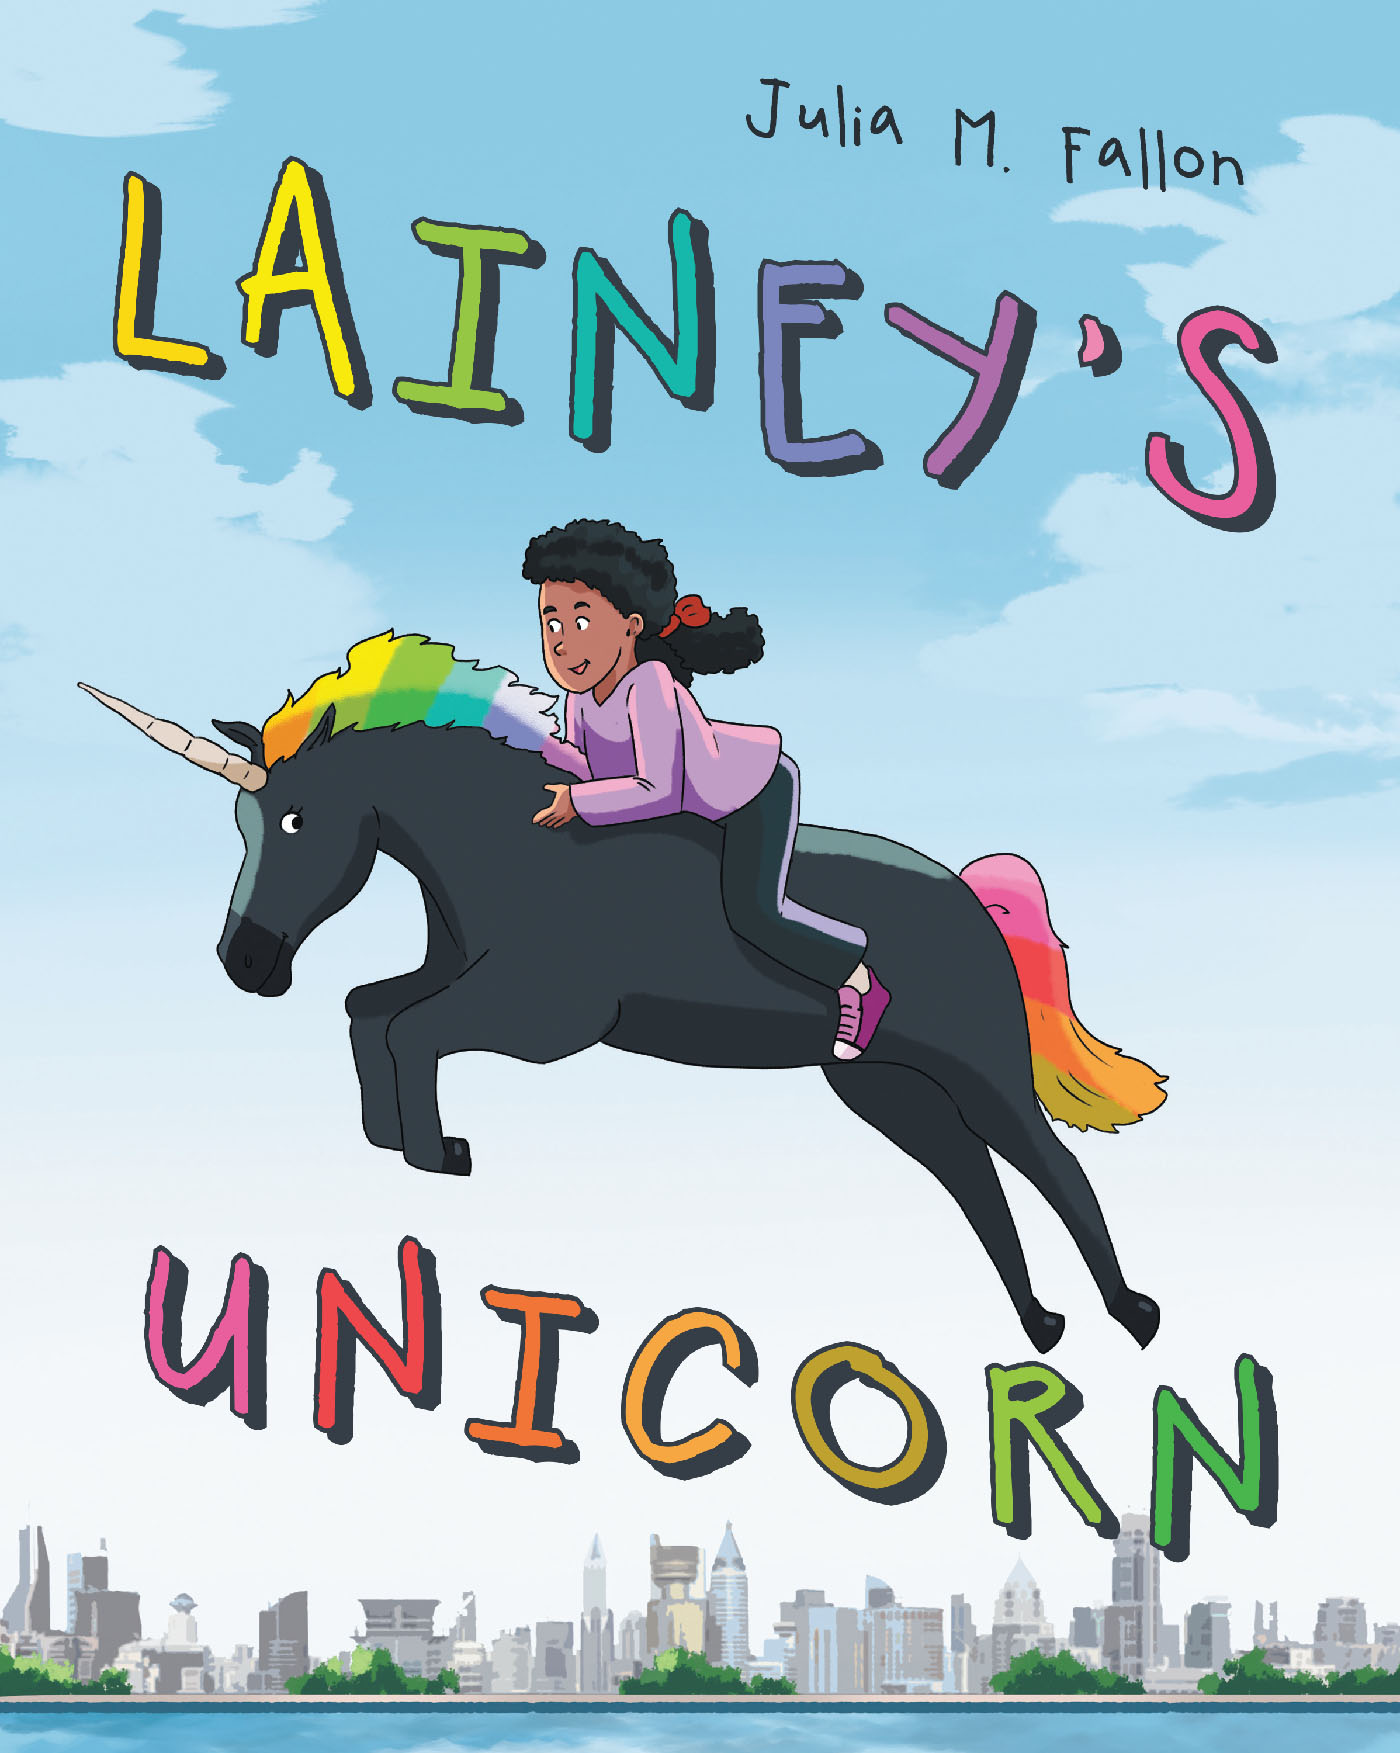 Lainey's Unicorn Cover Image